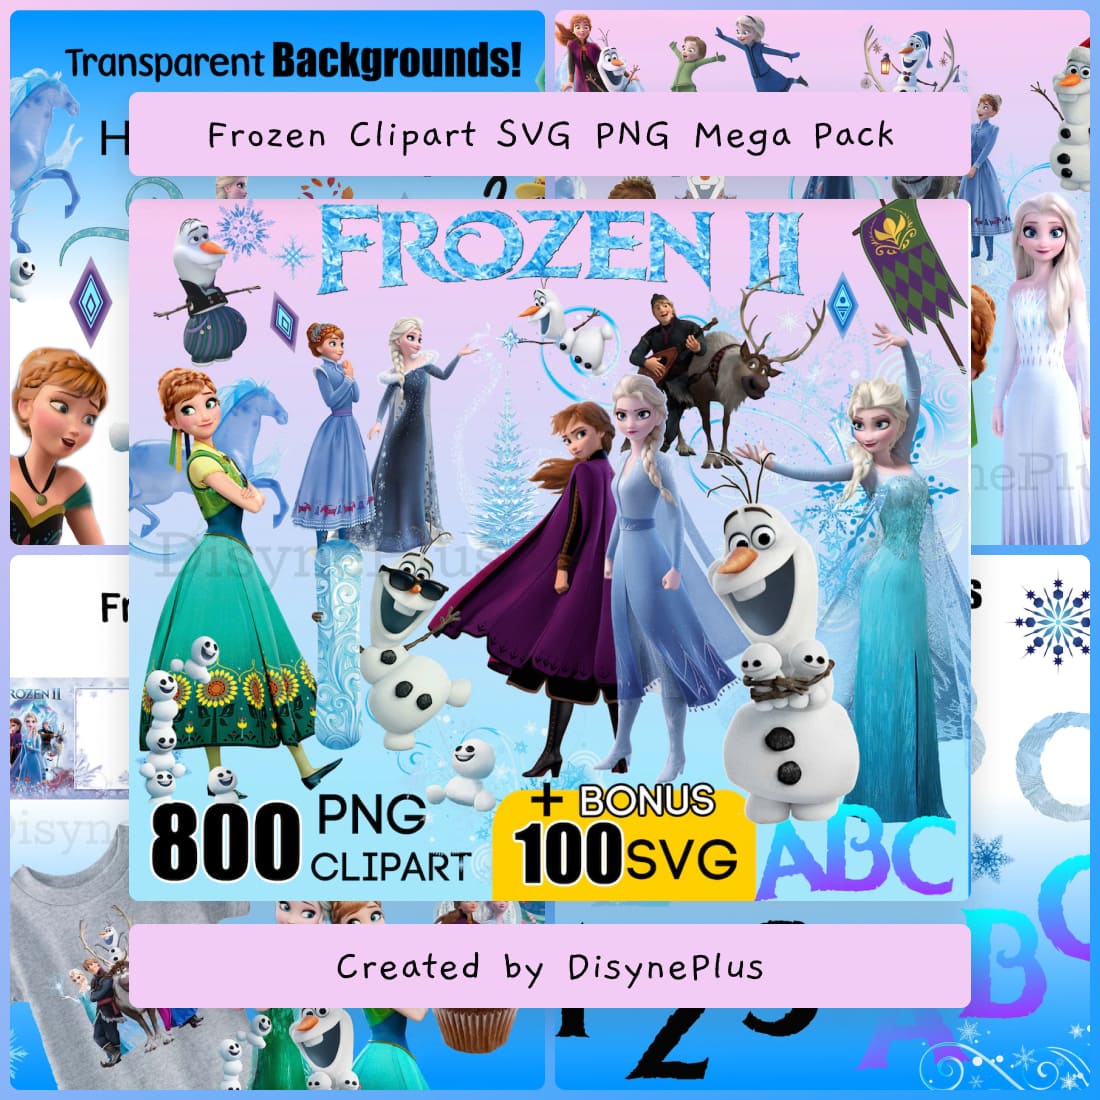 Frozen Clipart SVG PNG Mega Pack .